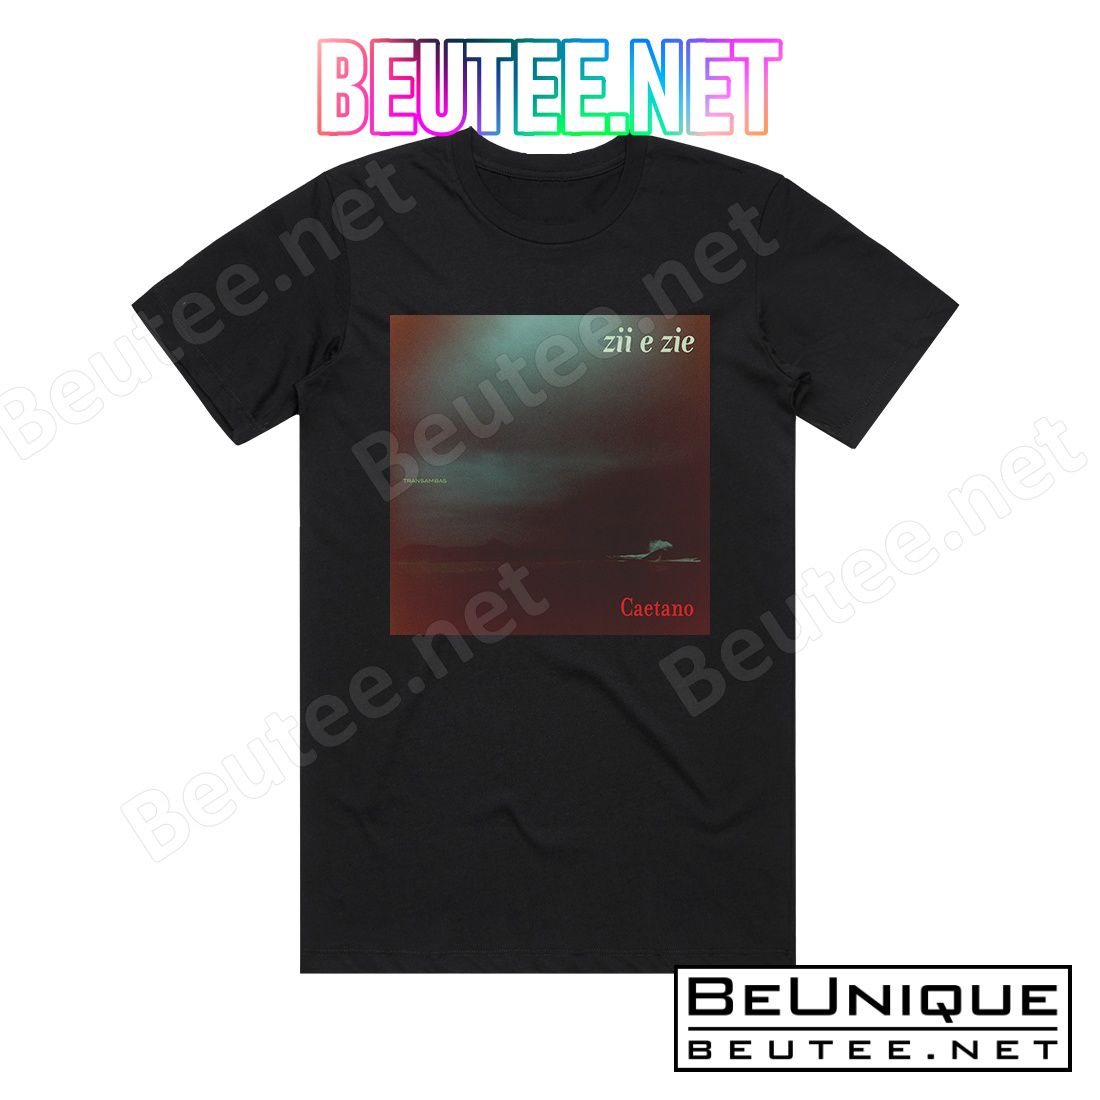 Caetano Veloso Zii E Zie Album Cover T-Shirt